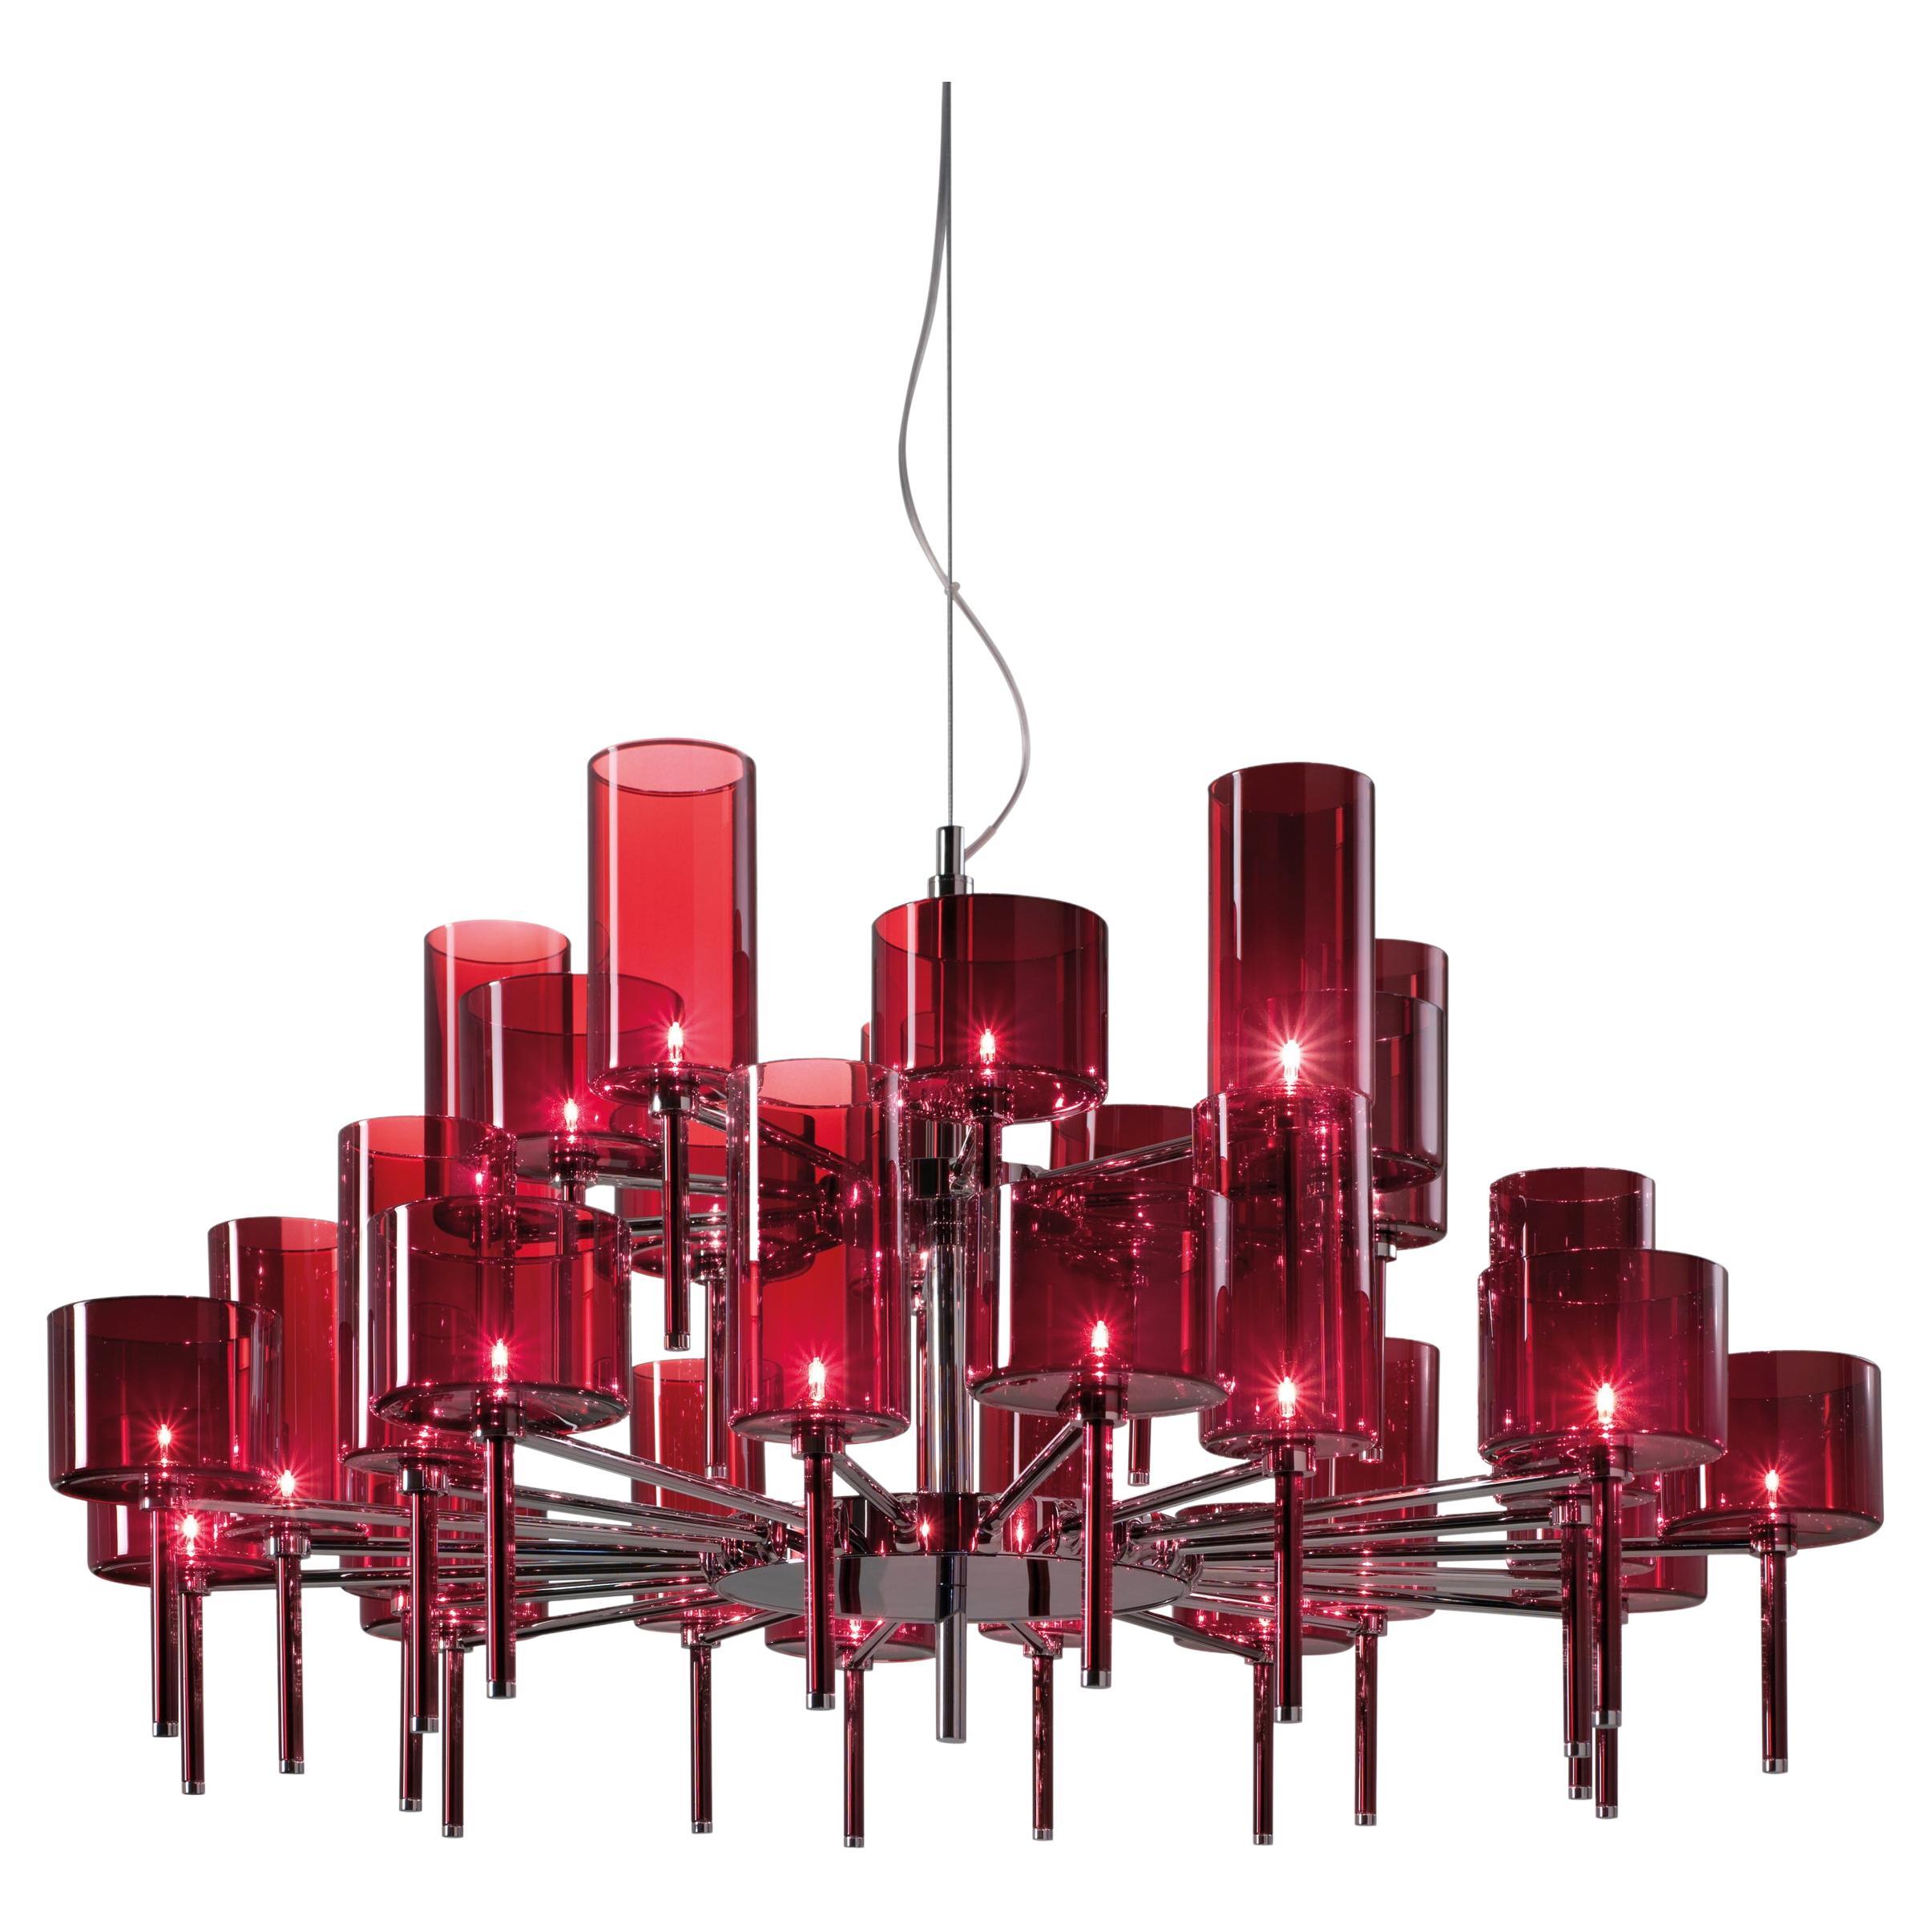 Axolight Spillray 30 Light Pendant Lamp in Red by Manuel & Vanessa Vivian For Sale